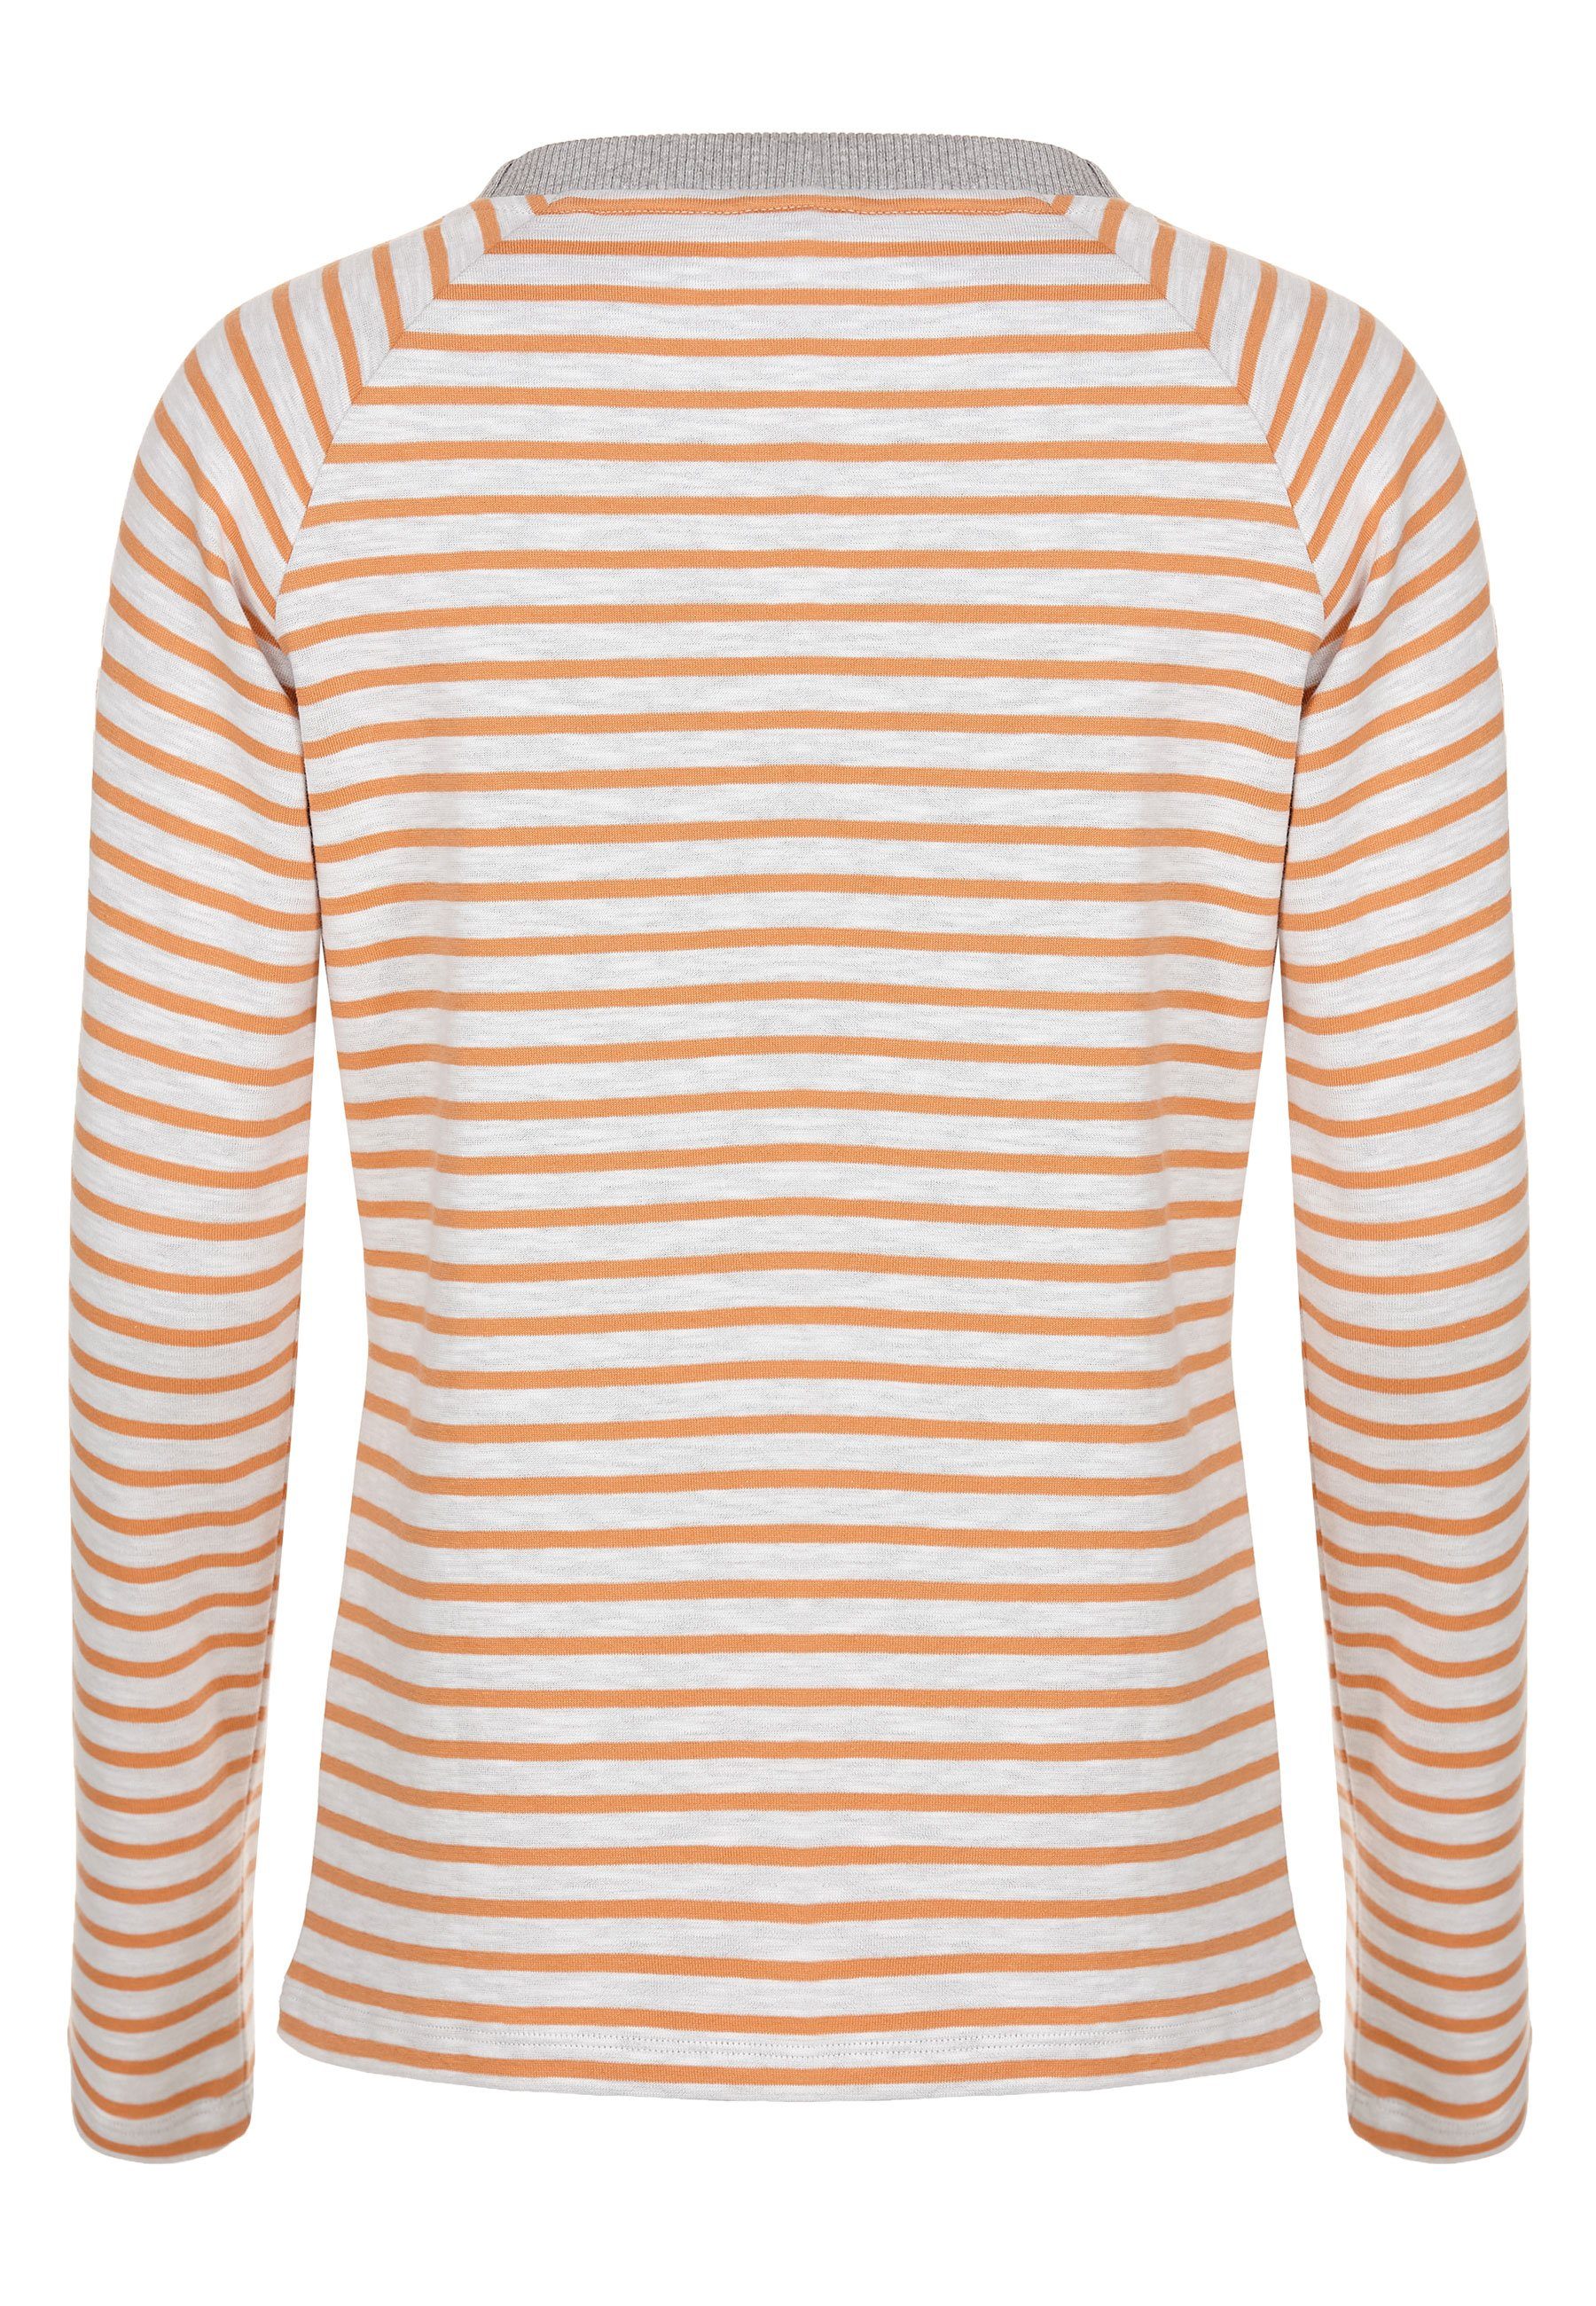 Halsausschnitt weiter Elkline soft orange Streifen - Sweatshirt Tomorrow white